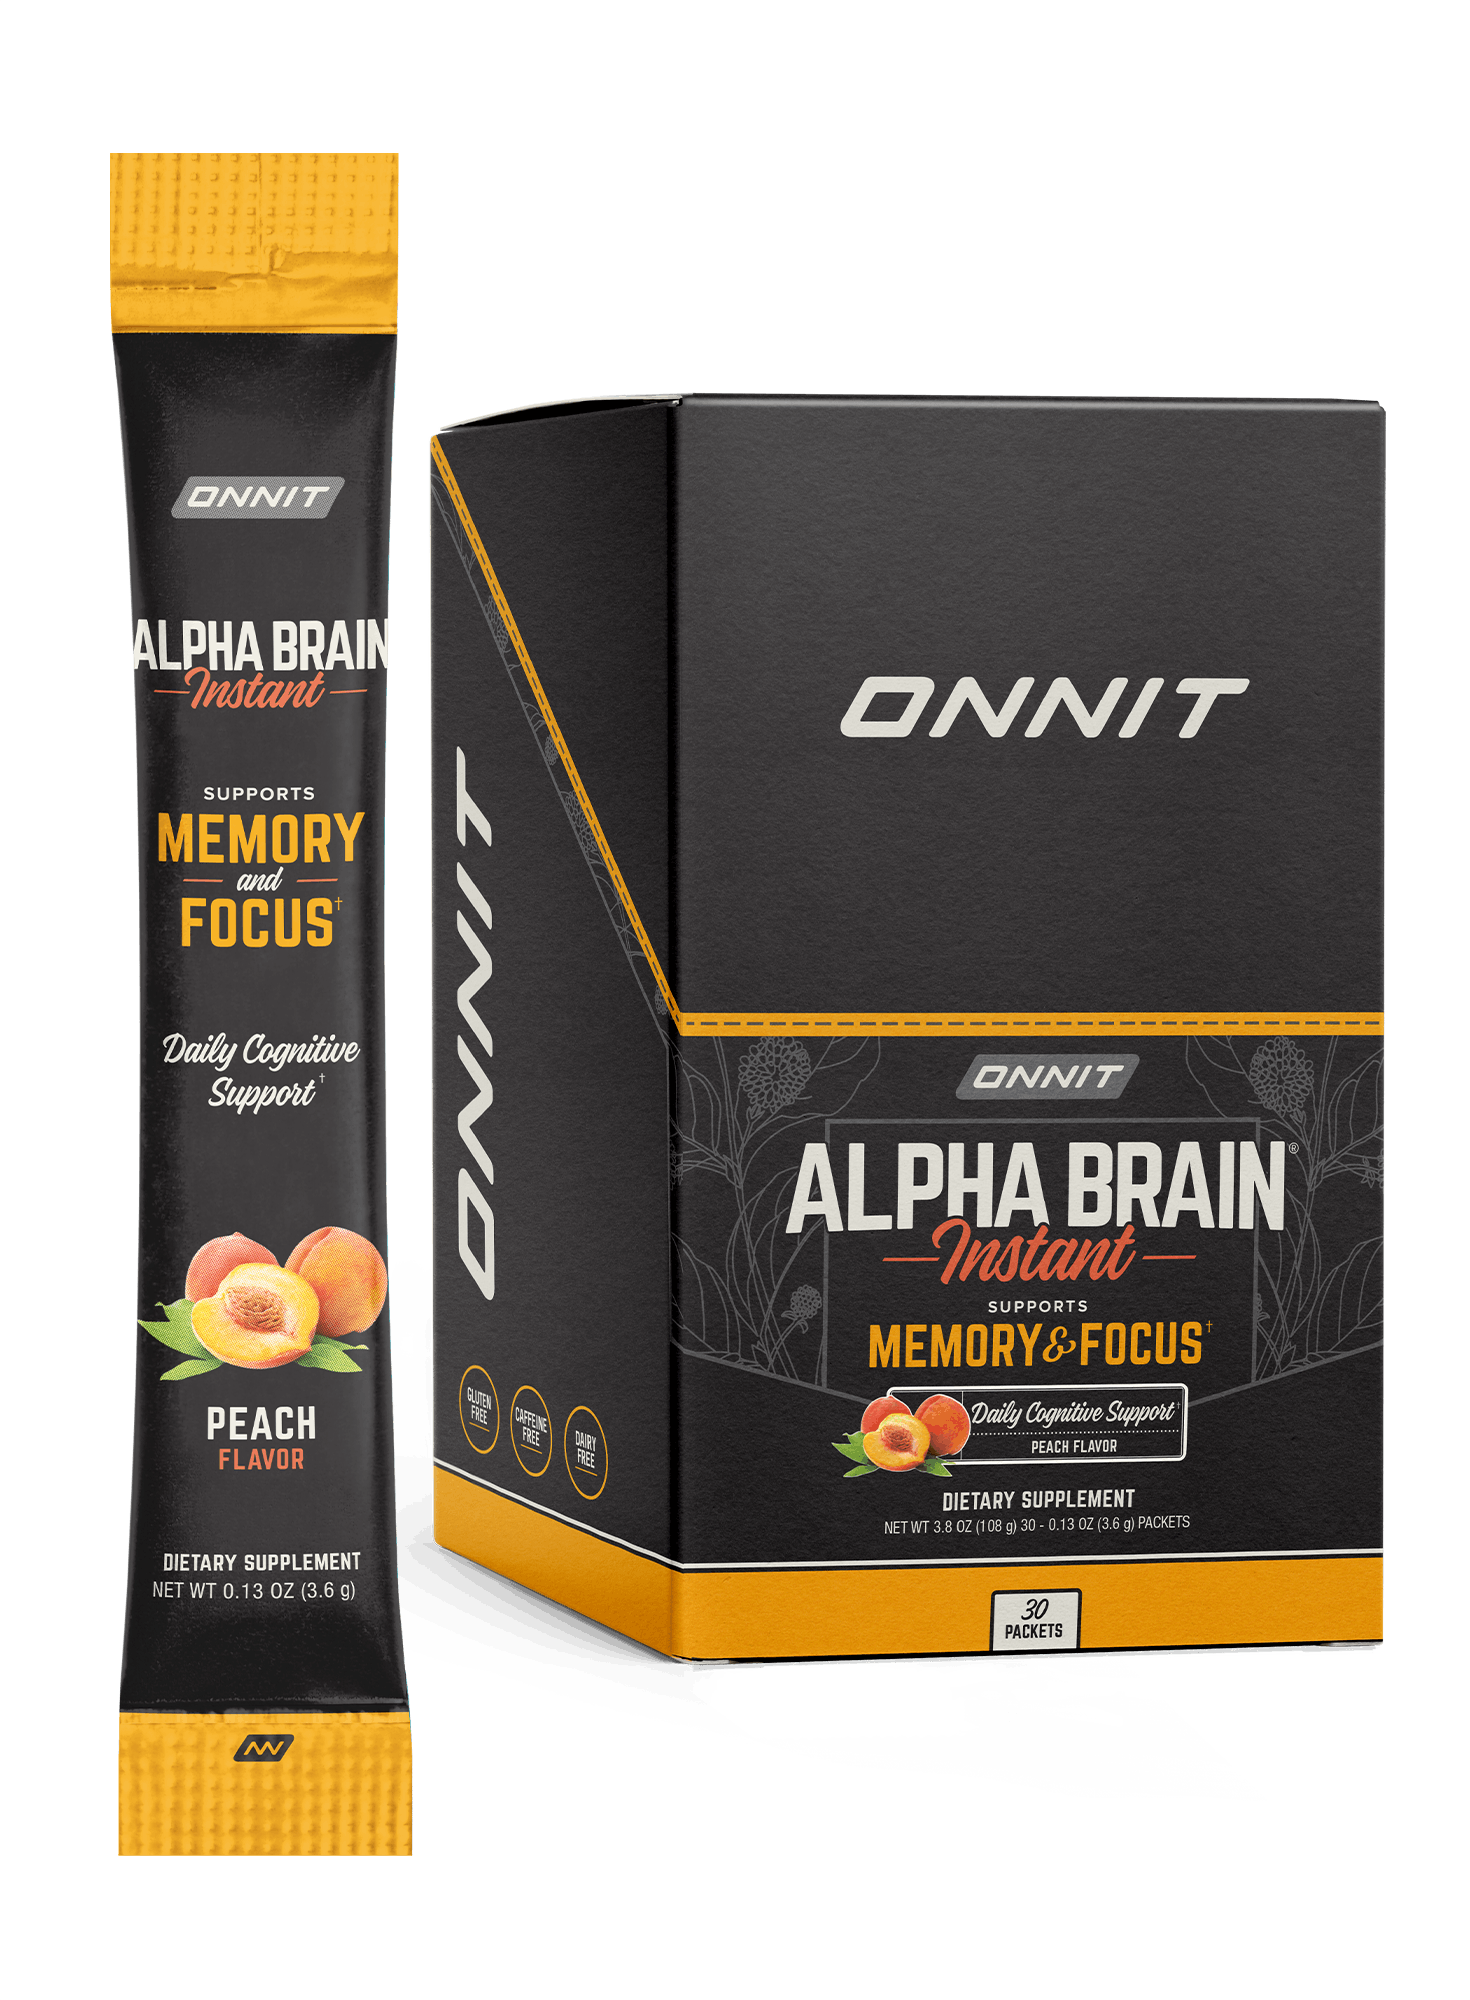 onnit alpha brain